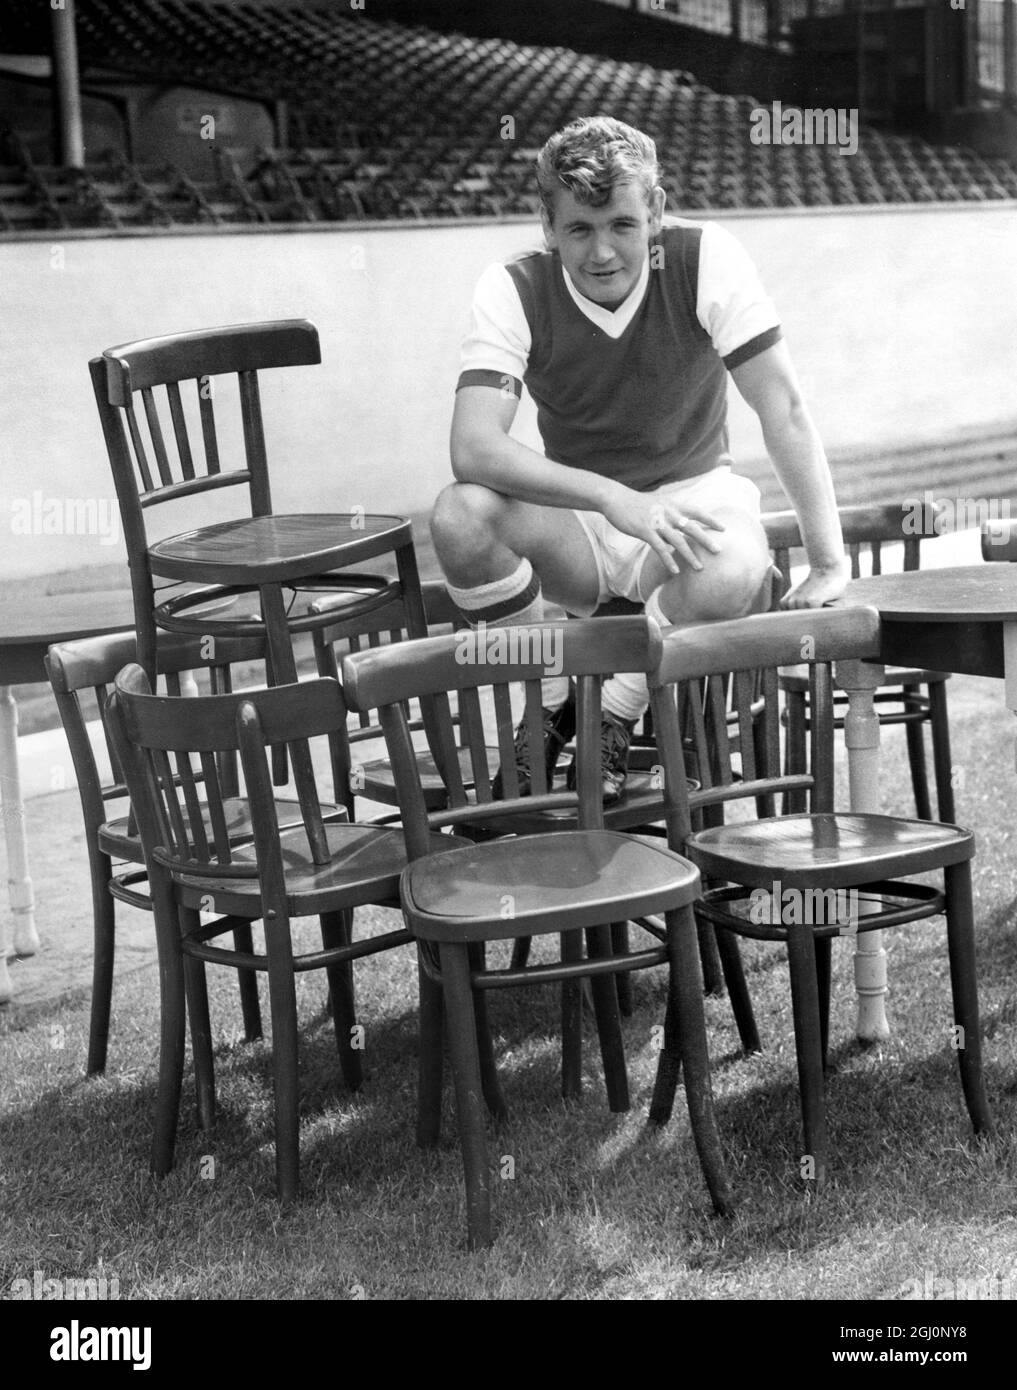 Joe Baker, qui vient de passer à Arsenal de Turin, Italie - vu se détendre sur un certain nombre de chaises à Highbury ce matin. 3 août 1962 Banque D'Images